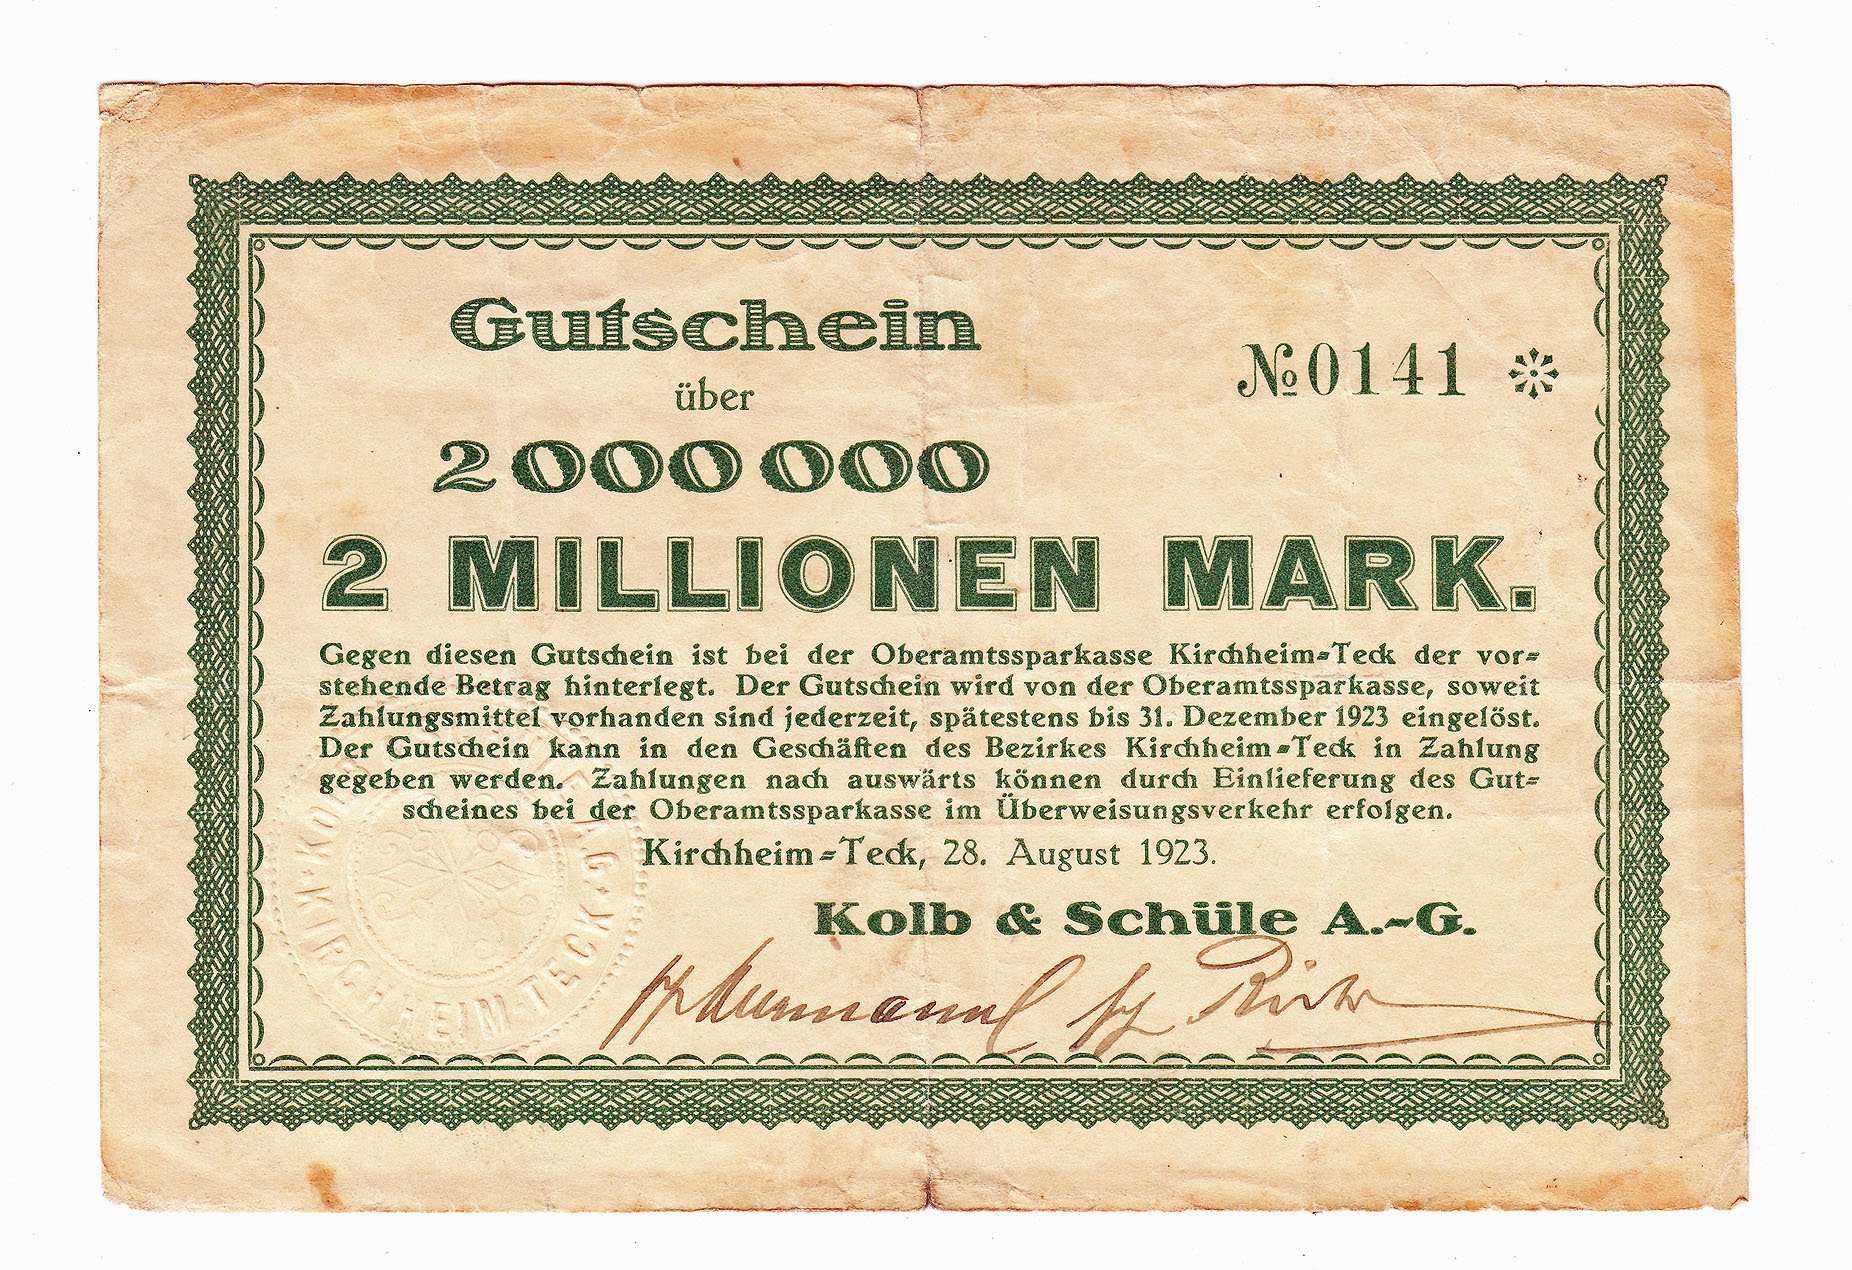 Notgeld der "Kolb & Schüle A.-G." über 2 Millionen Mark (Städtisches Museum im Kornhaus Kirchheim u. T. CC BY-NC-SA)